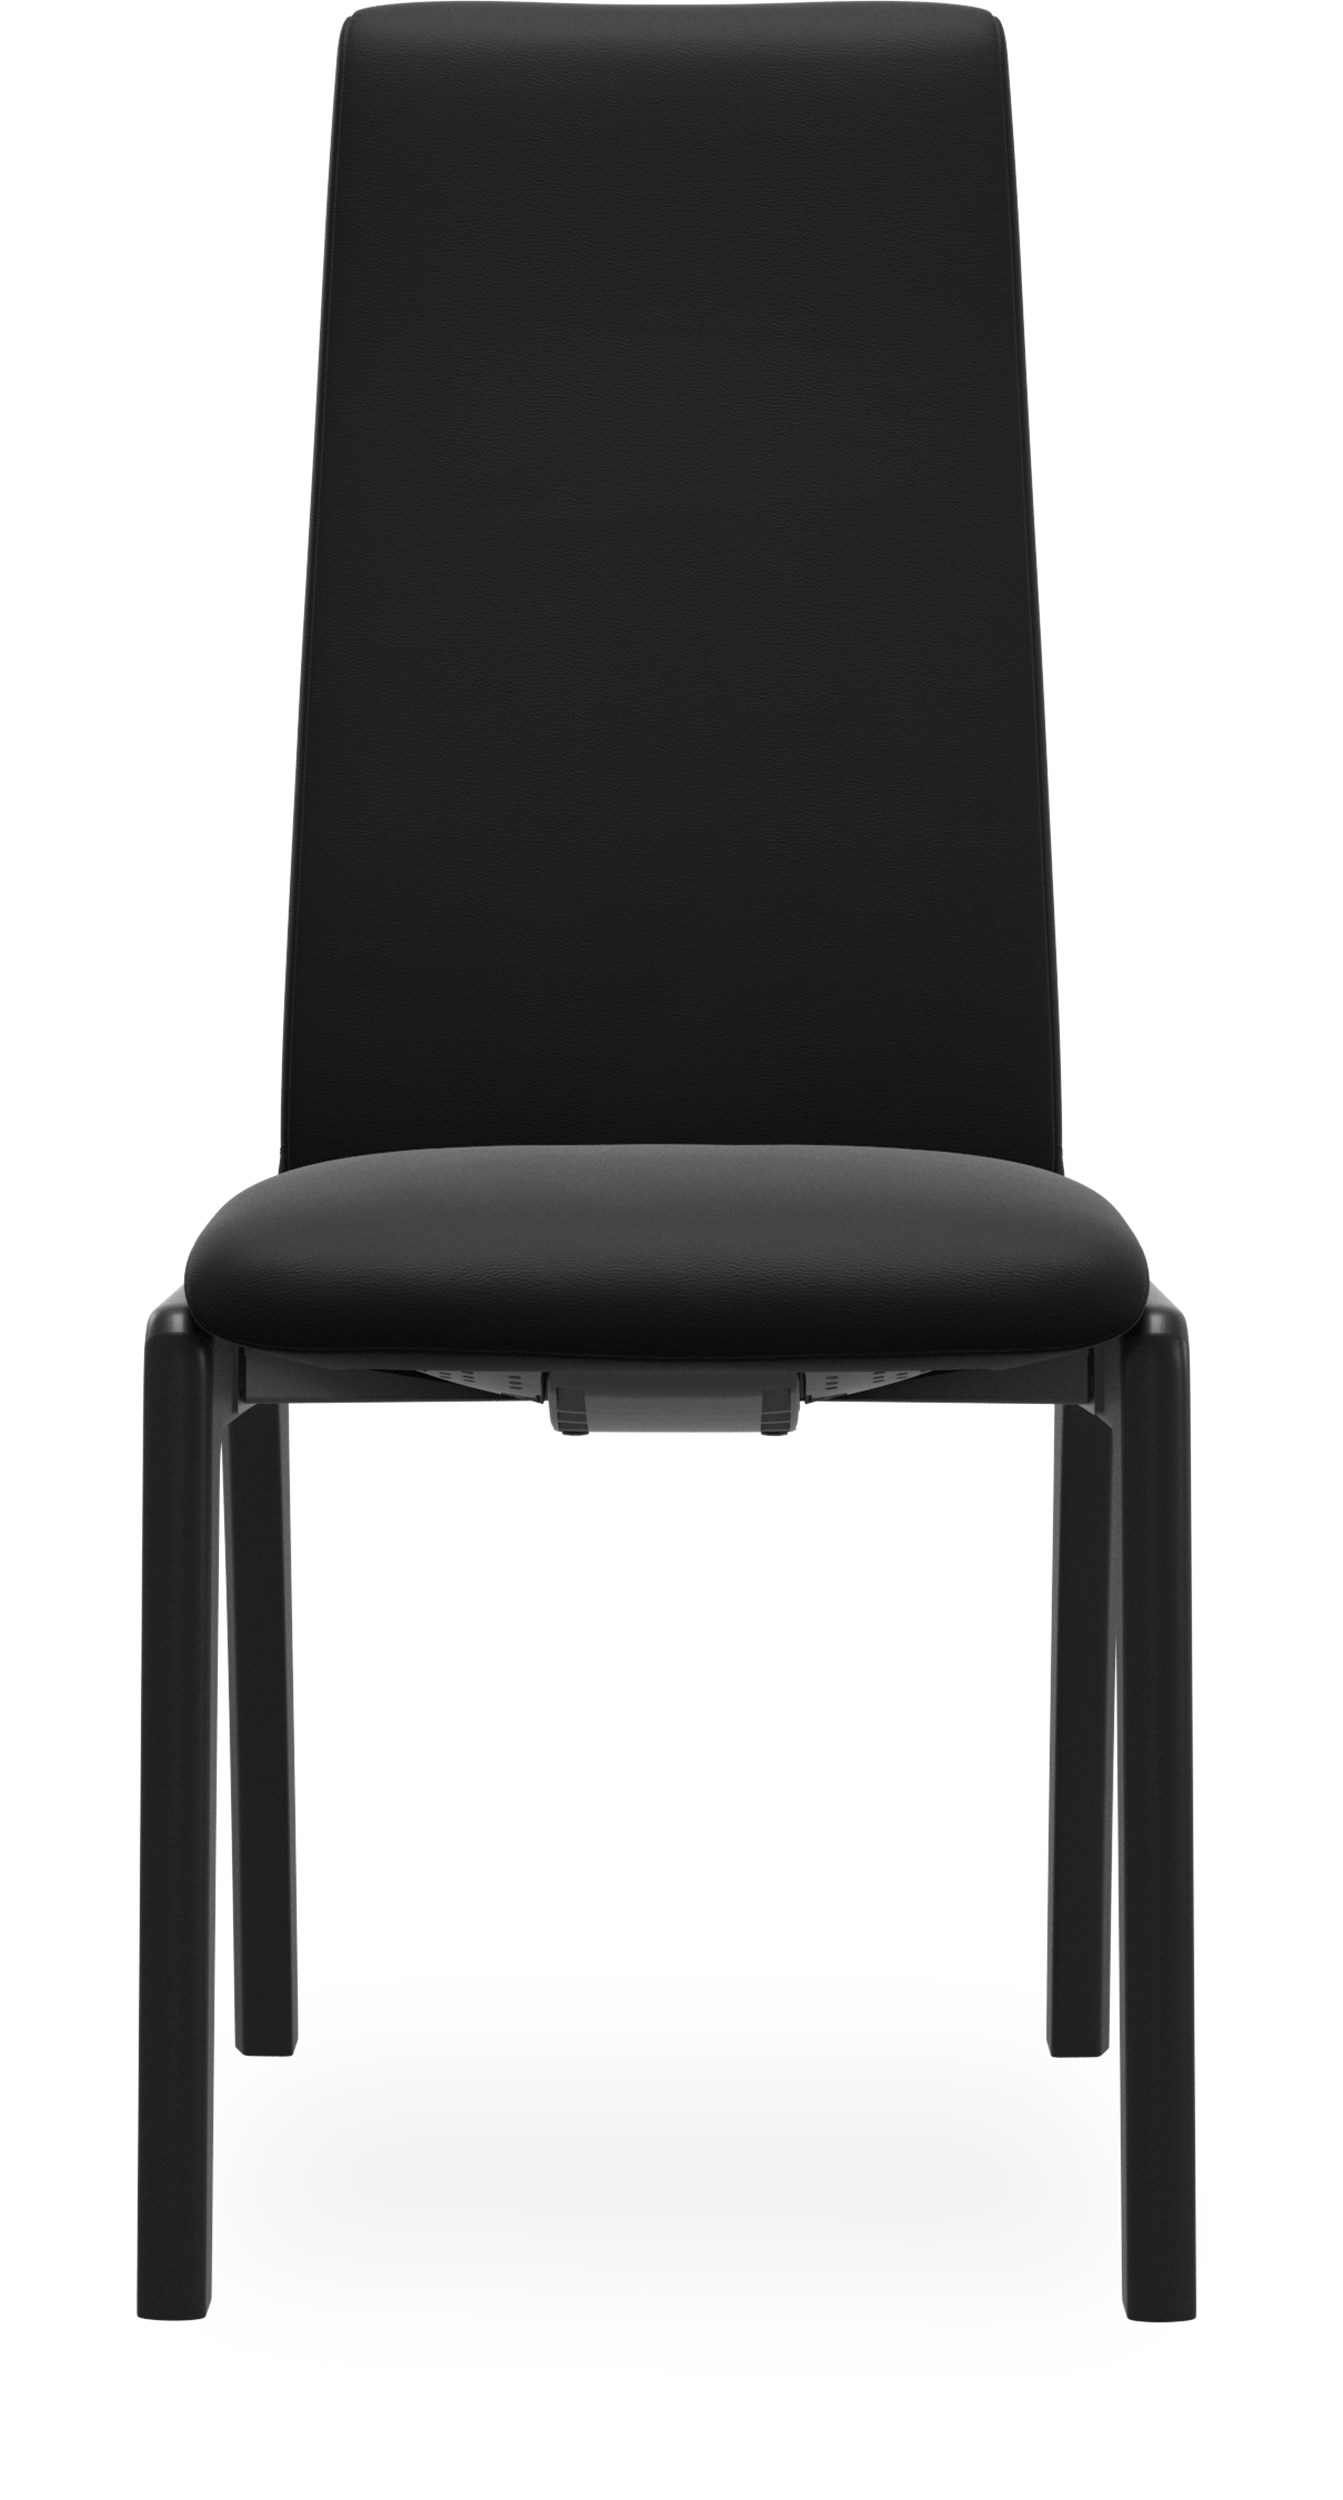 Stressless M D100 Laurel high Spisebordsstol - Paloma 9419 Black læder og stel i lakeret, massiv sortbejdset bøg